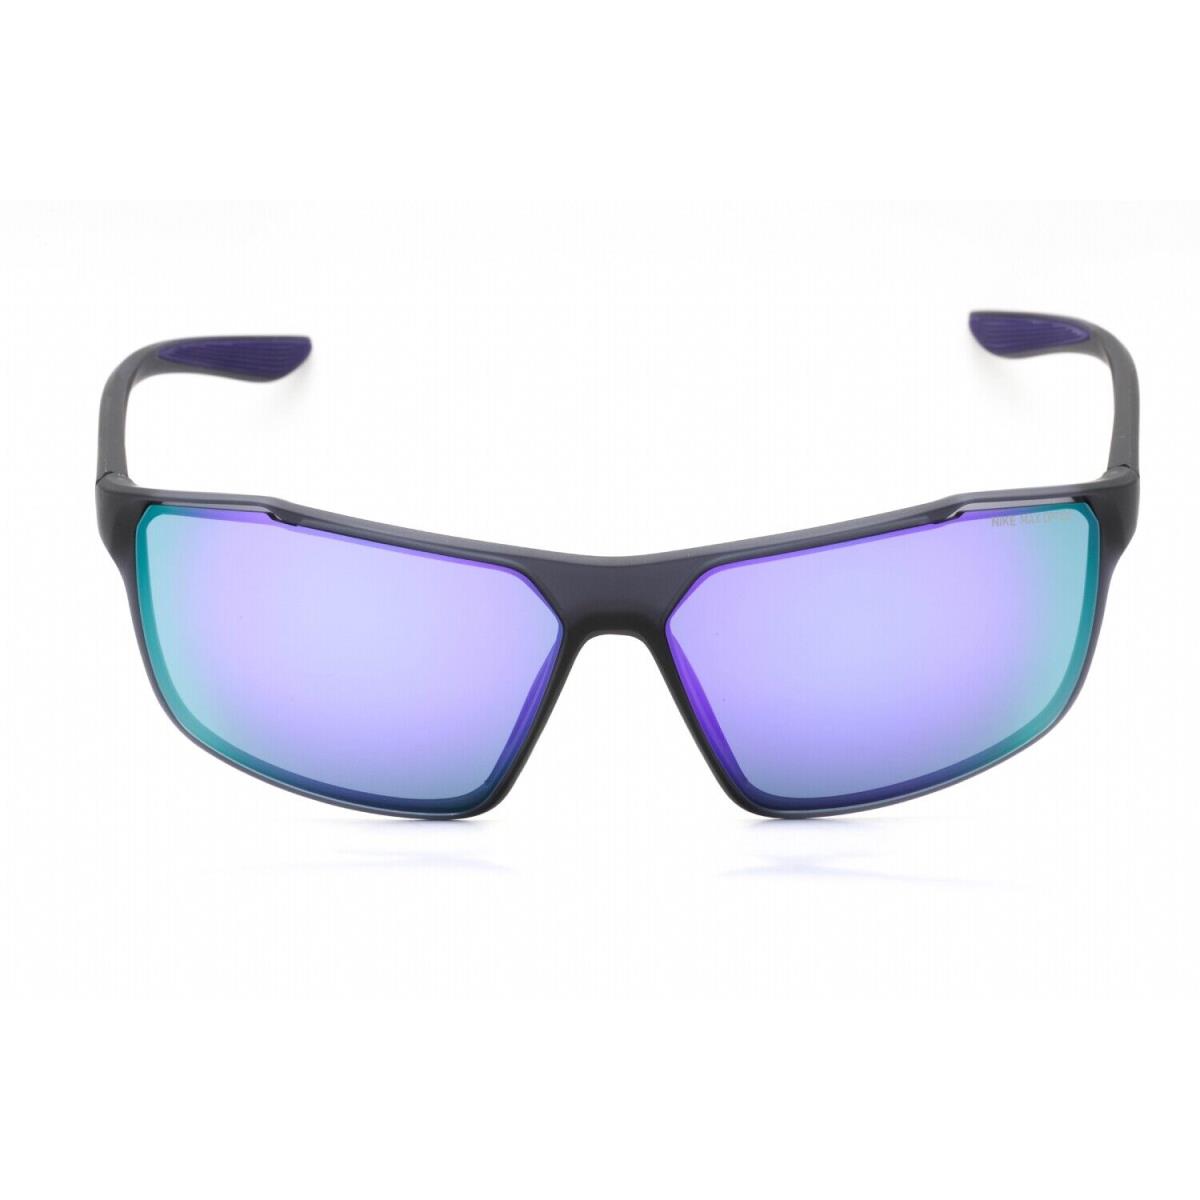 Nike Windstorm M CW4672 015 Sunglasses Matte Gray Frame Violet Mirror - Frame: Matte Gray, Lens: Violet